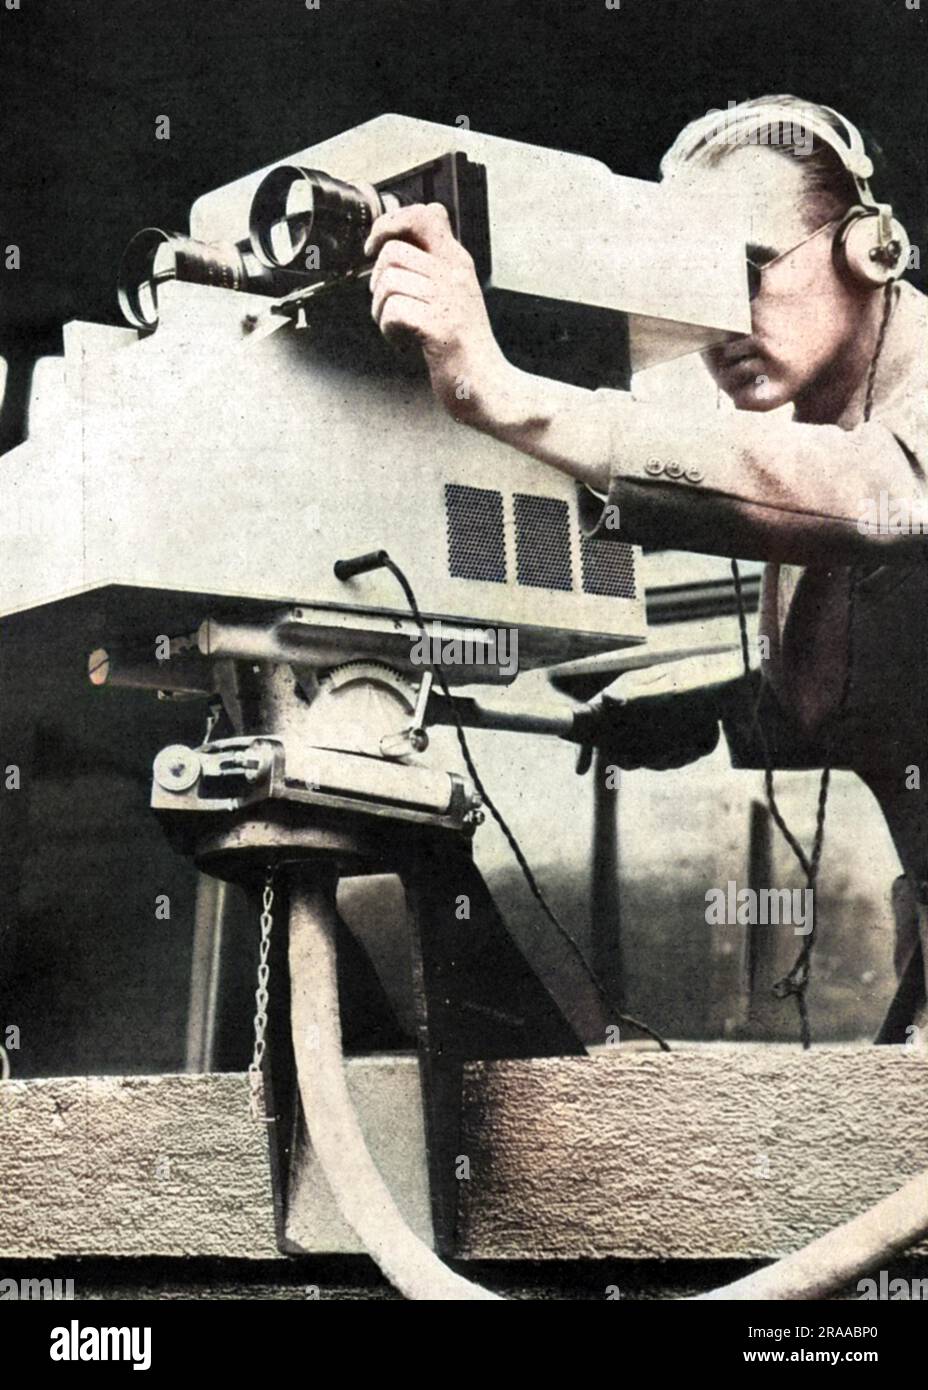 Telecamere televisive in azione al Lawn Tennis Championships a Wimbledon nel 1937, che fu trasmesso per la prima volta quell'anno. Data: 1937 Foto Stock